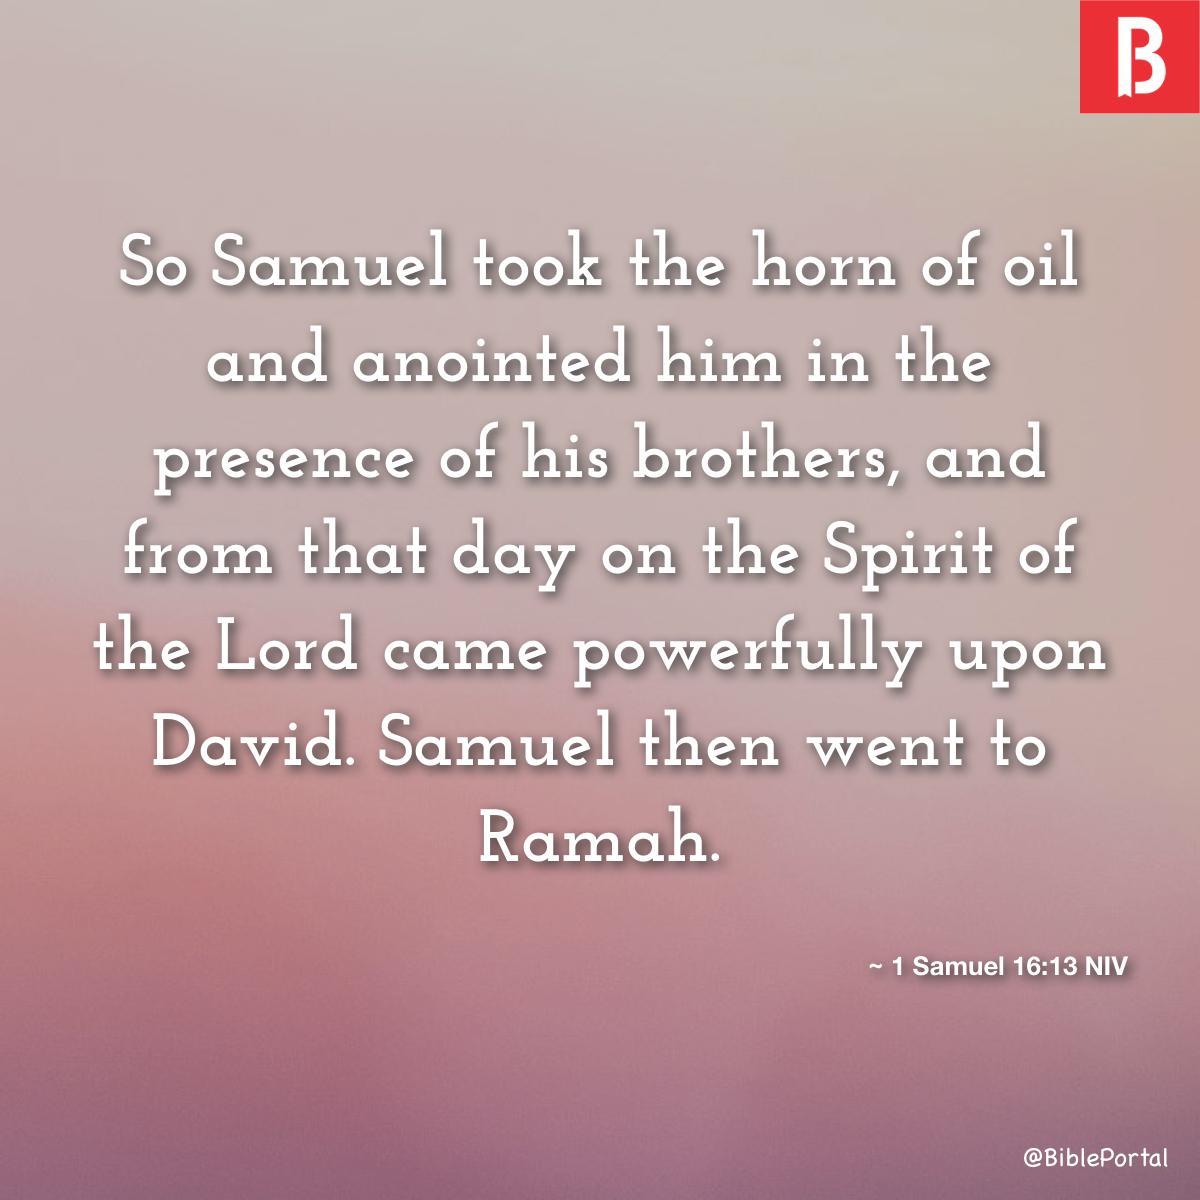 1 Samuel 16:13 NIV